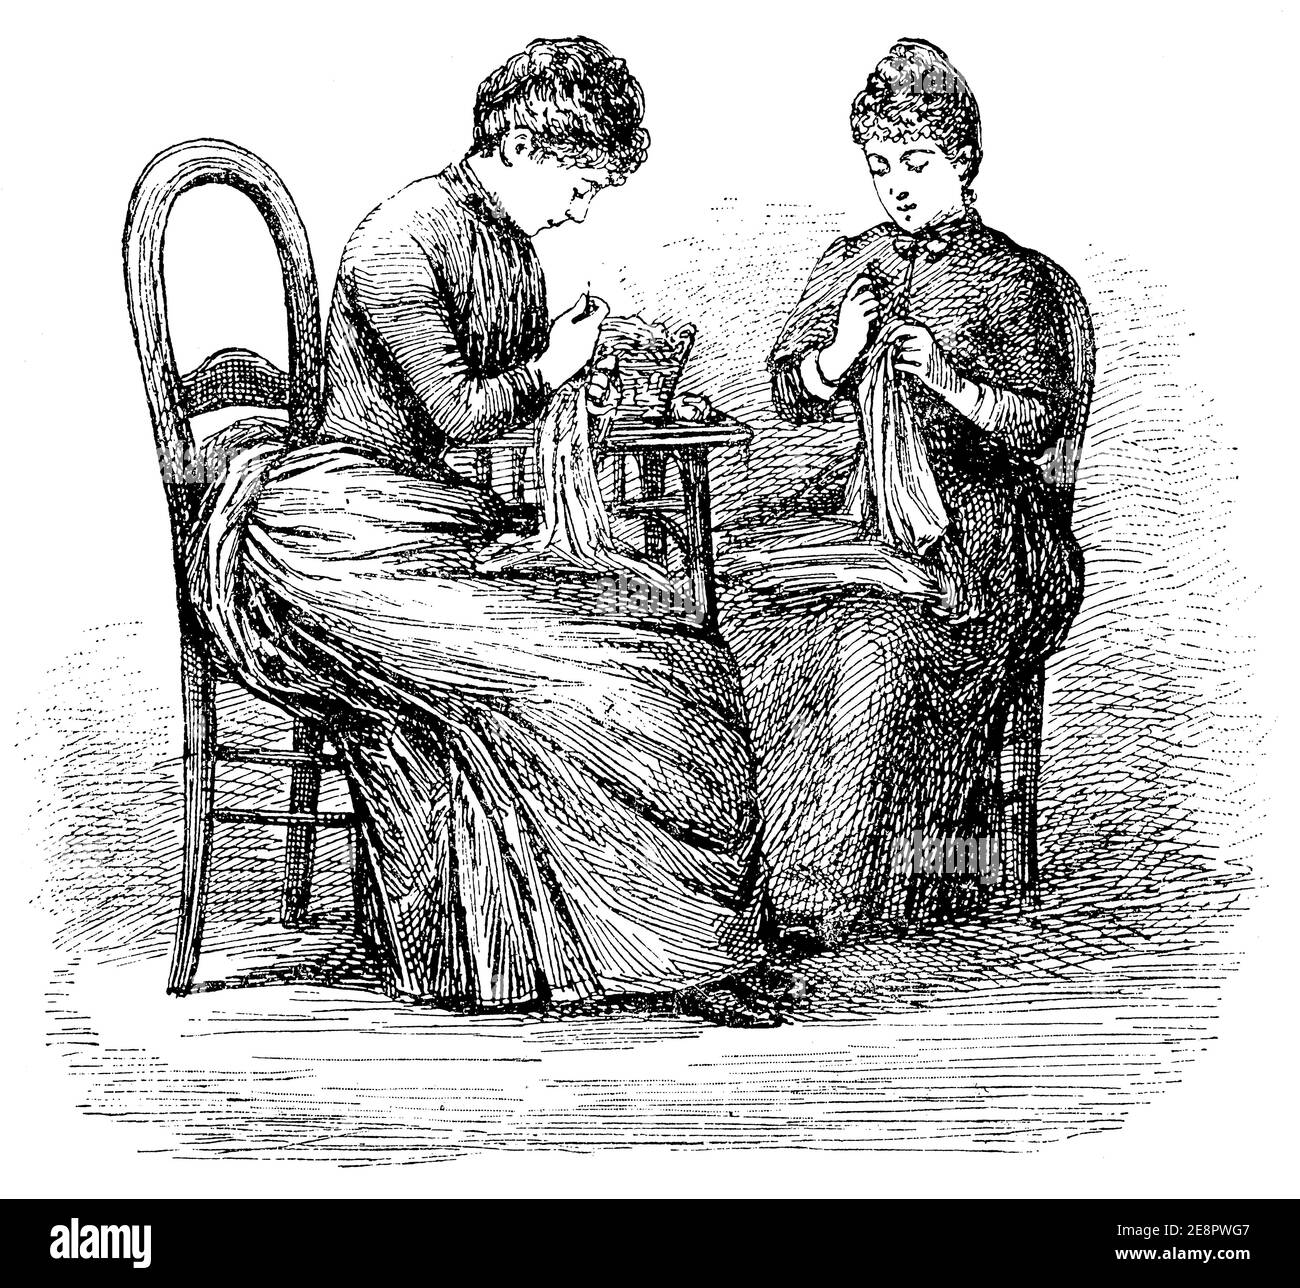 Come sedersi al lavoro. La donna sulla sinistra ha una cattiva postura quando lavora. Illustrazione del 19 ° secolo. Germania. Sfondo bianco. Foto Stock